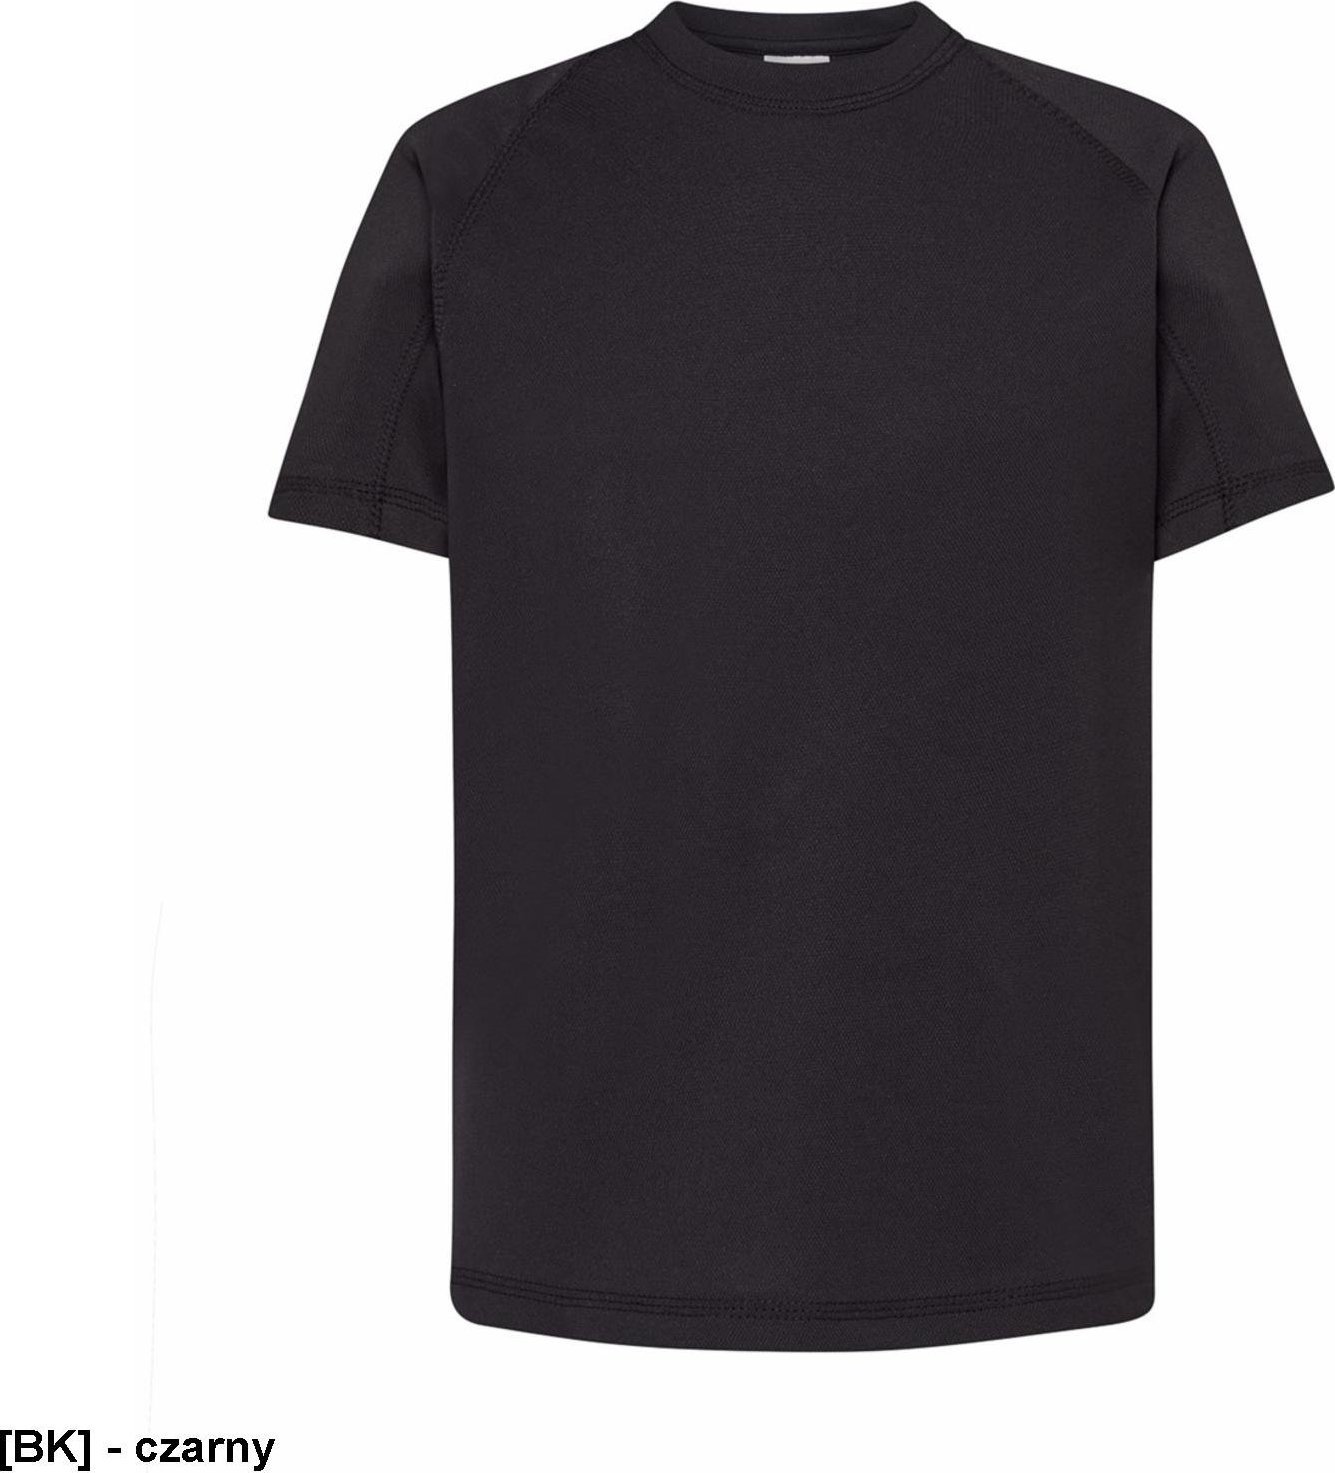 JHK TSRKSPOR SPORT KID - T-shirt dziecięcy z krótkim rękawem - czarny - wzrost 110-152cm. 5-6